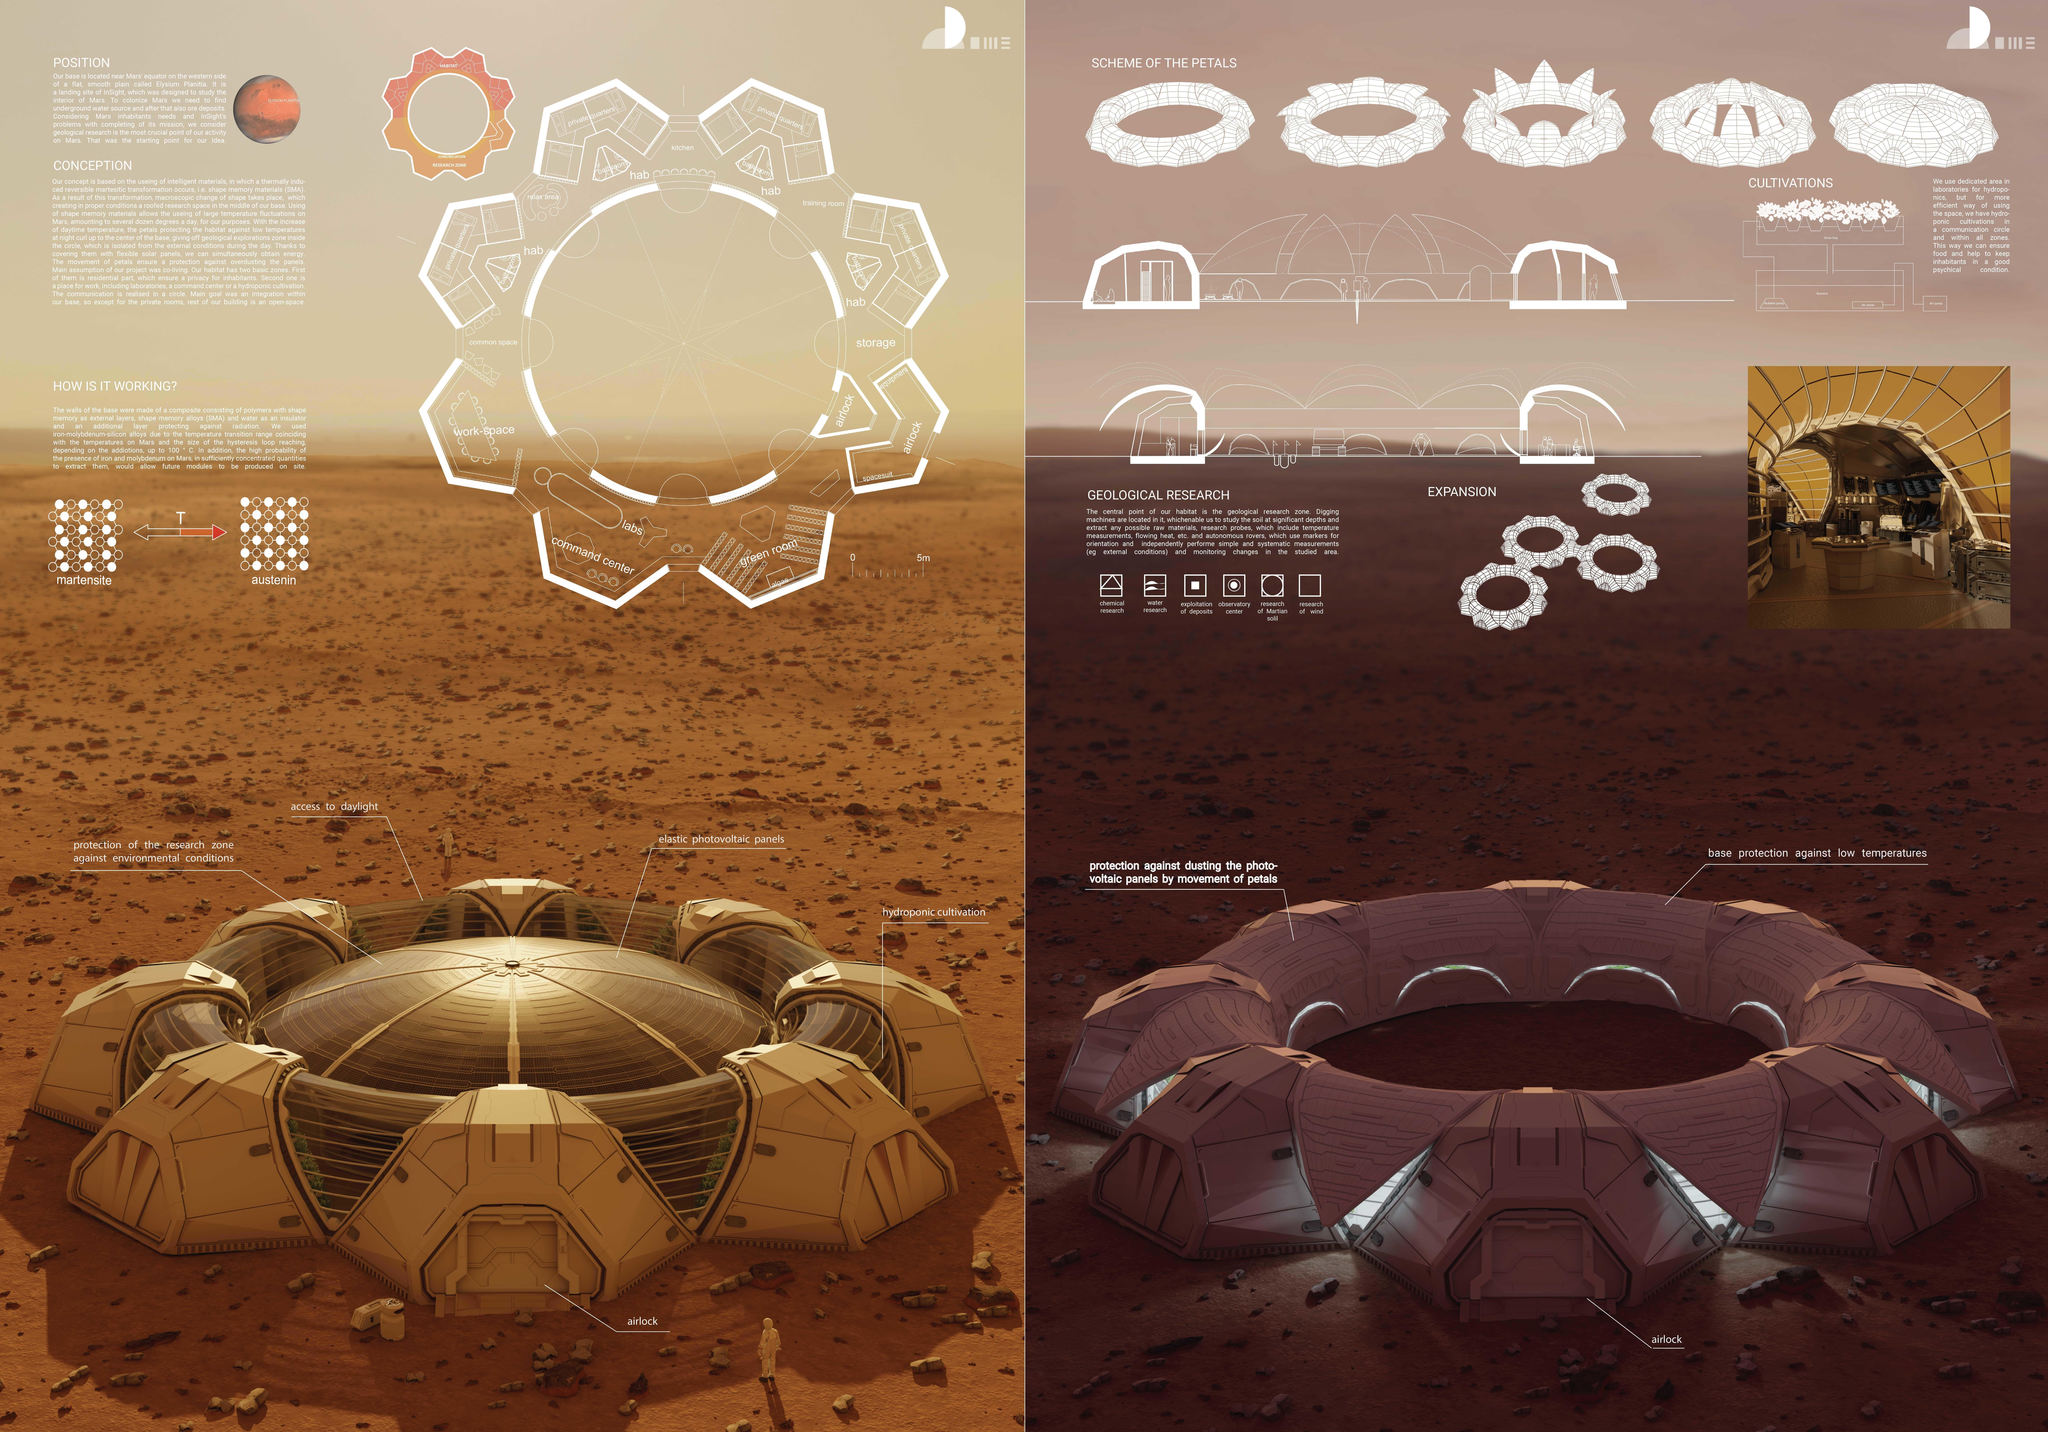 Dome Martian base